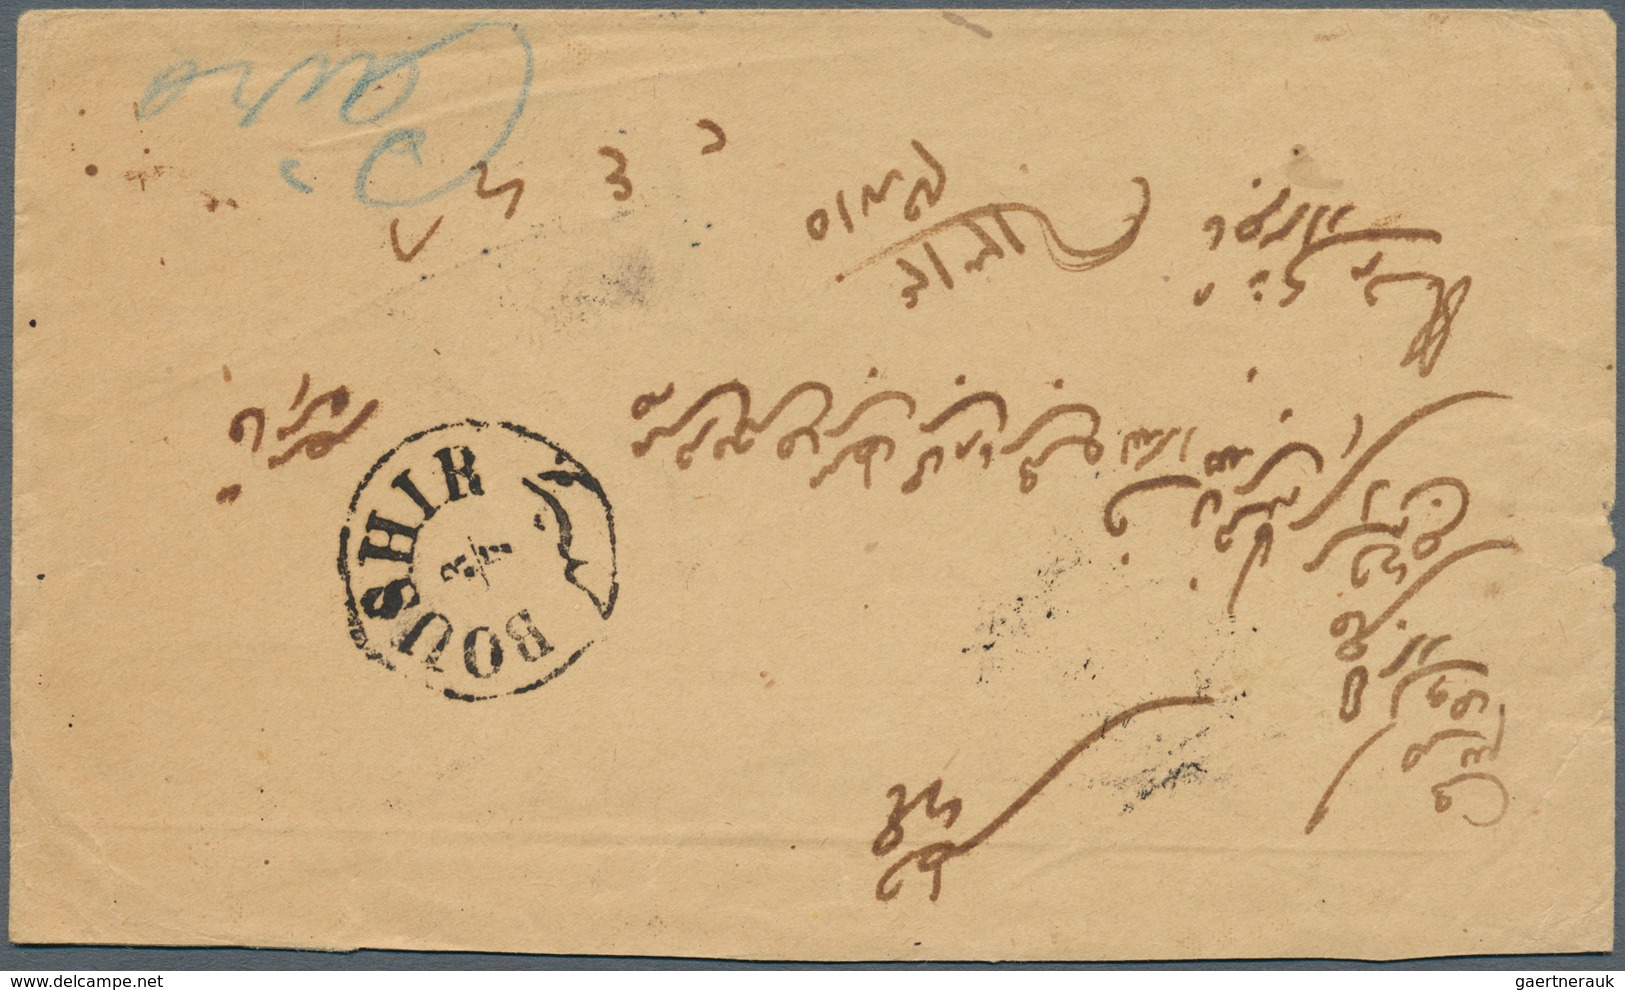 Iran: 1896. Envelope Addressed To Egypt Bearing Yvert 74, 1c Violet (6) And Yvert 75, 2c Green (3) T - Iran